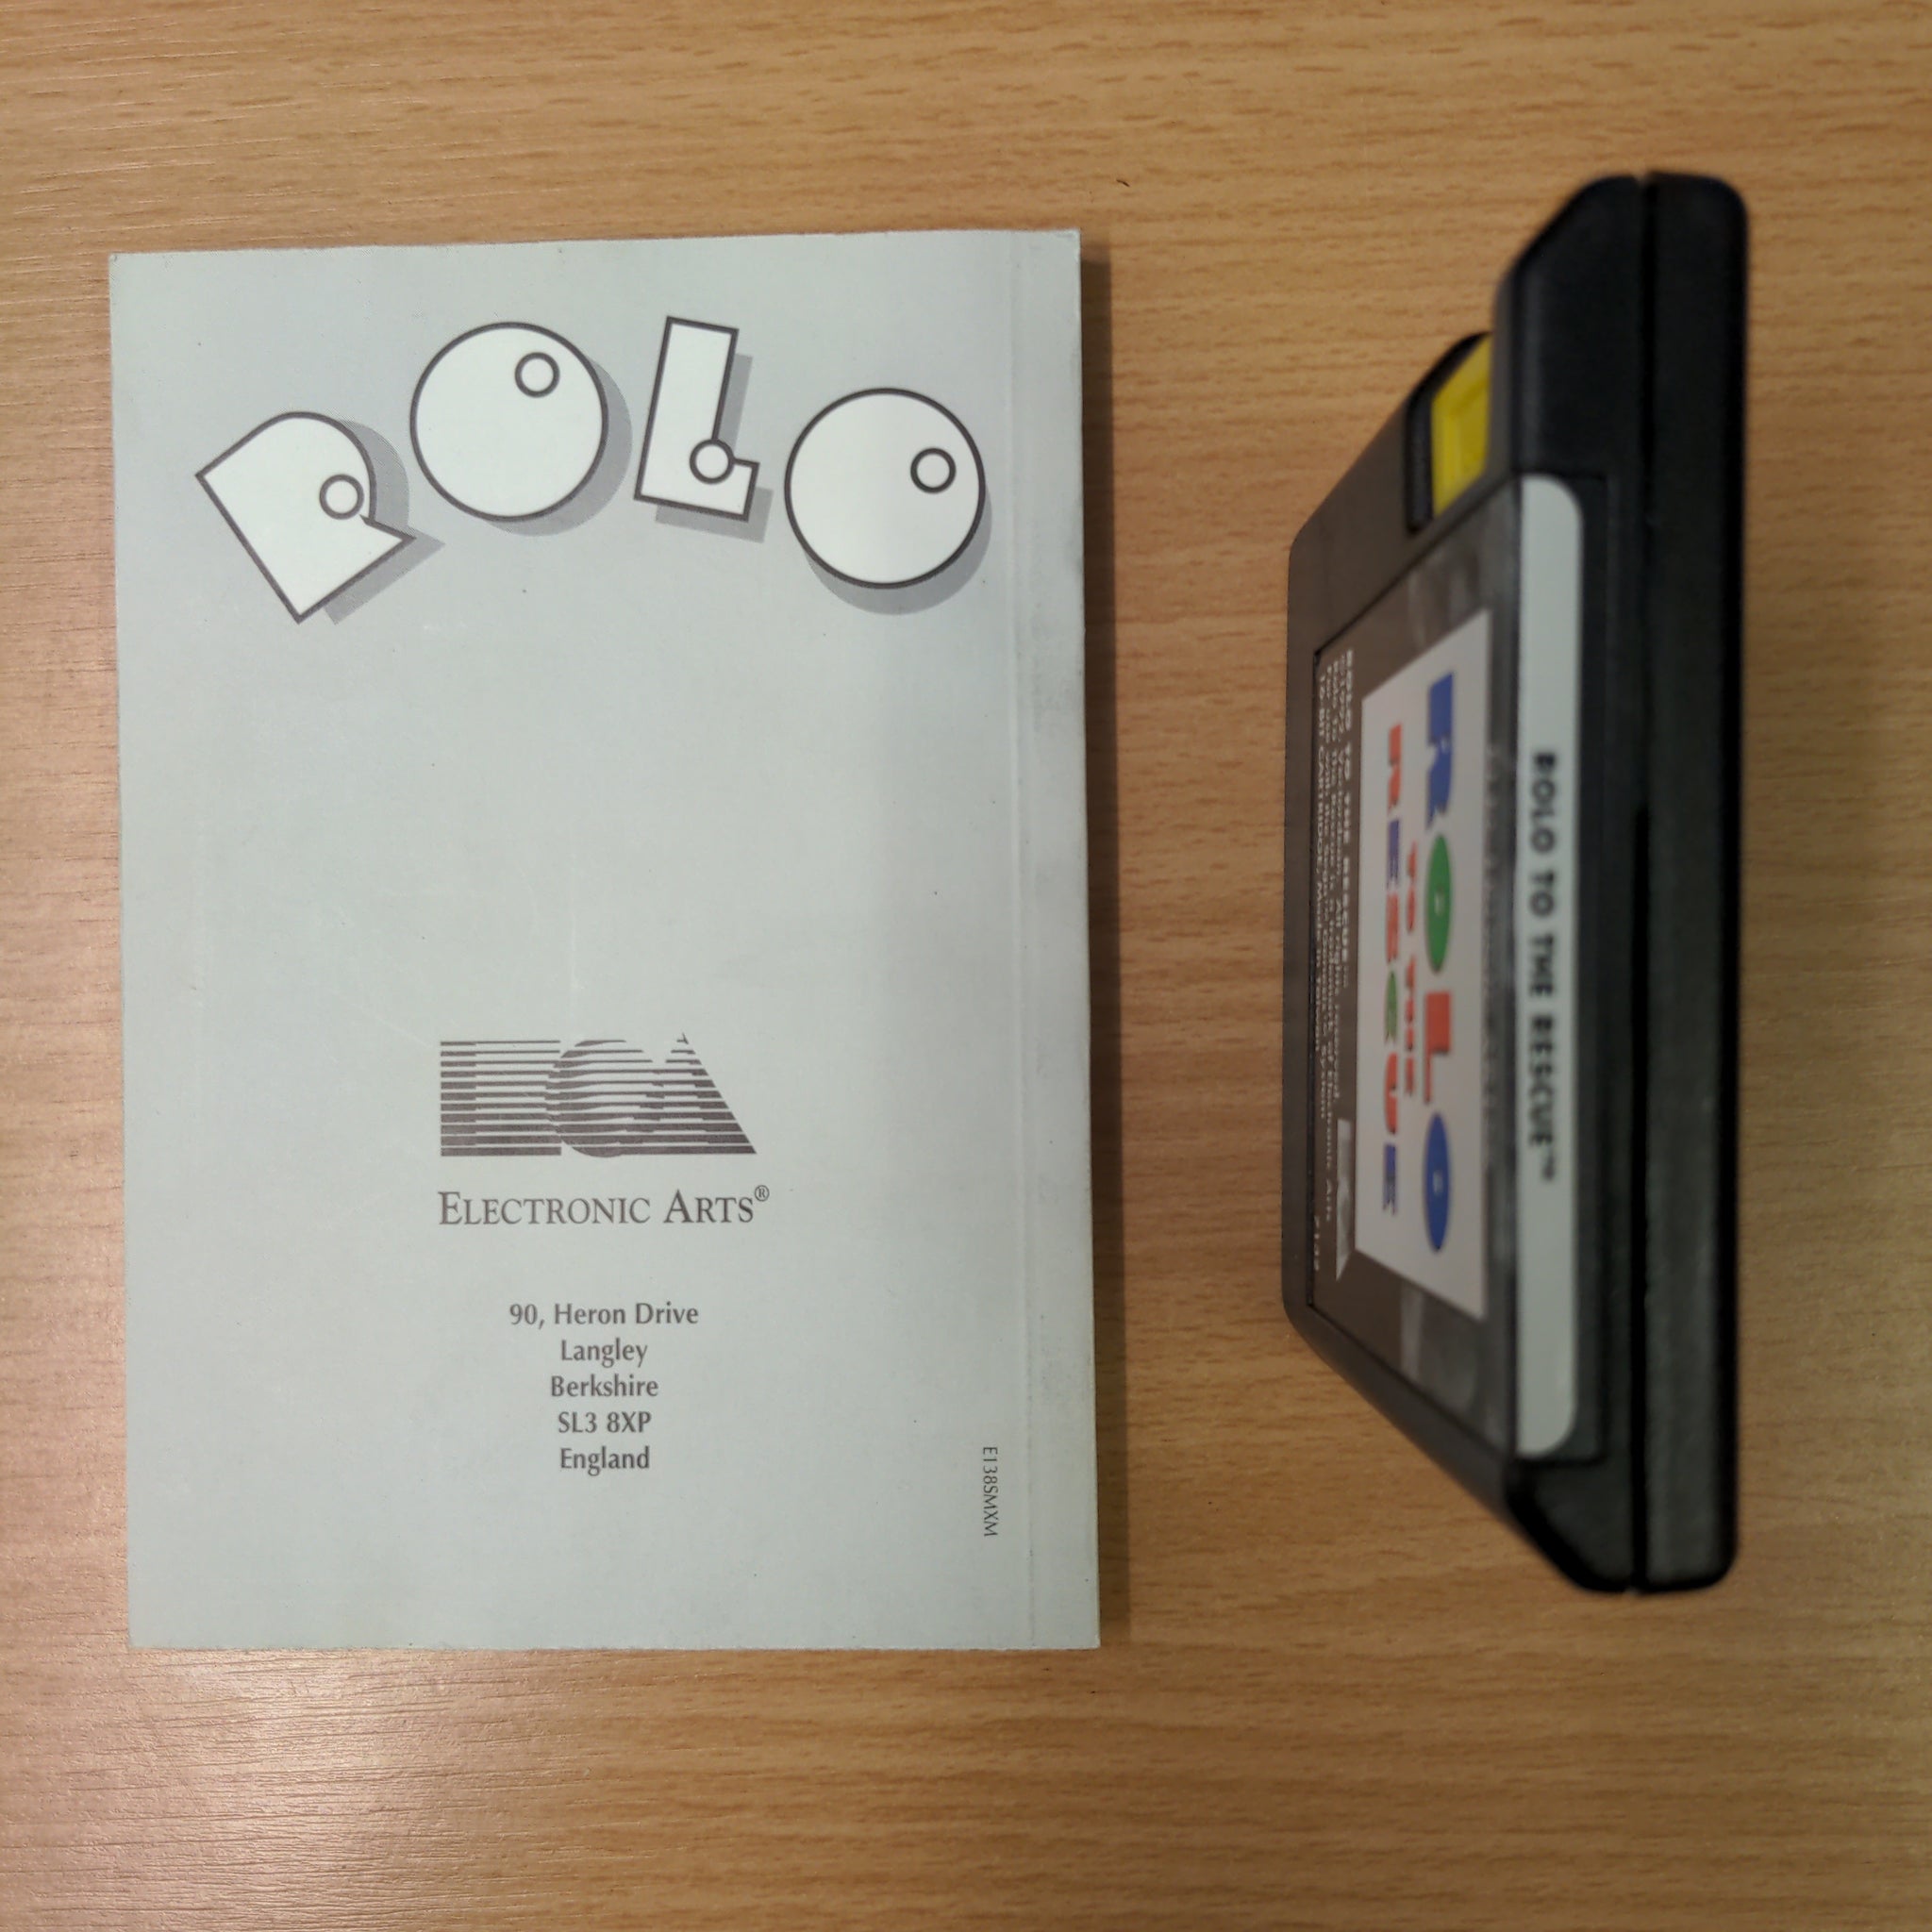 Rolo to the Rescue Sega Mega Drive game complete